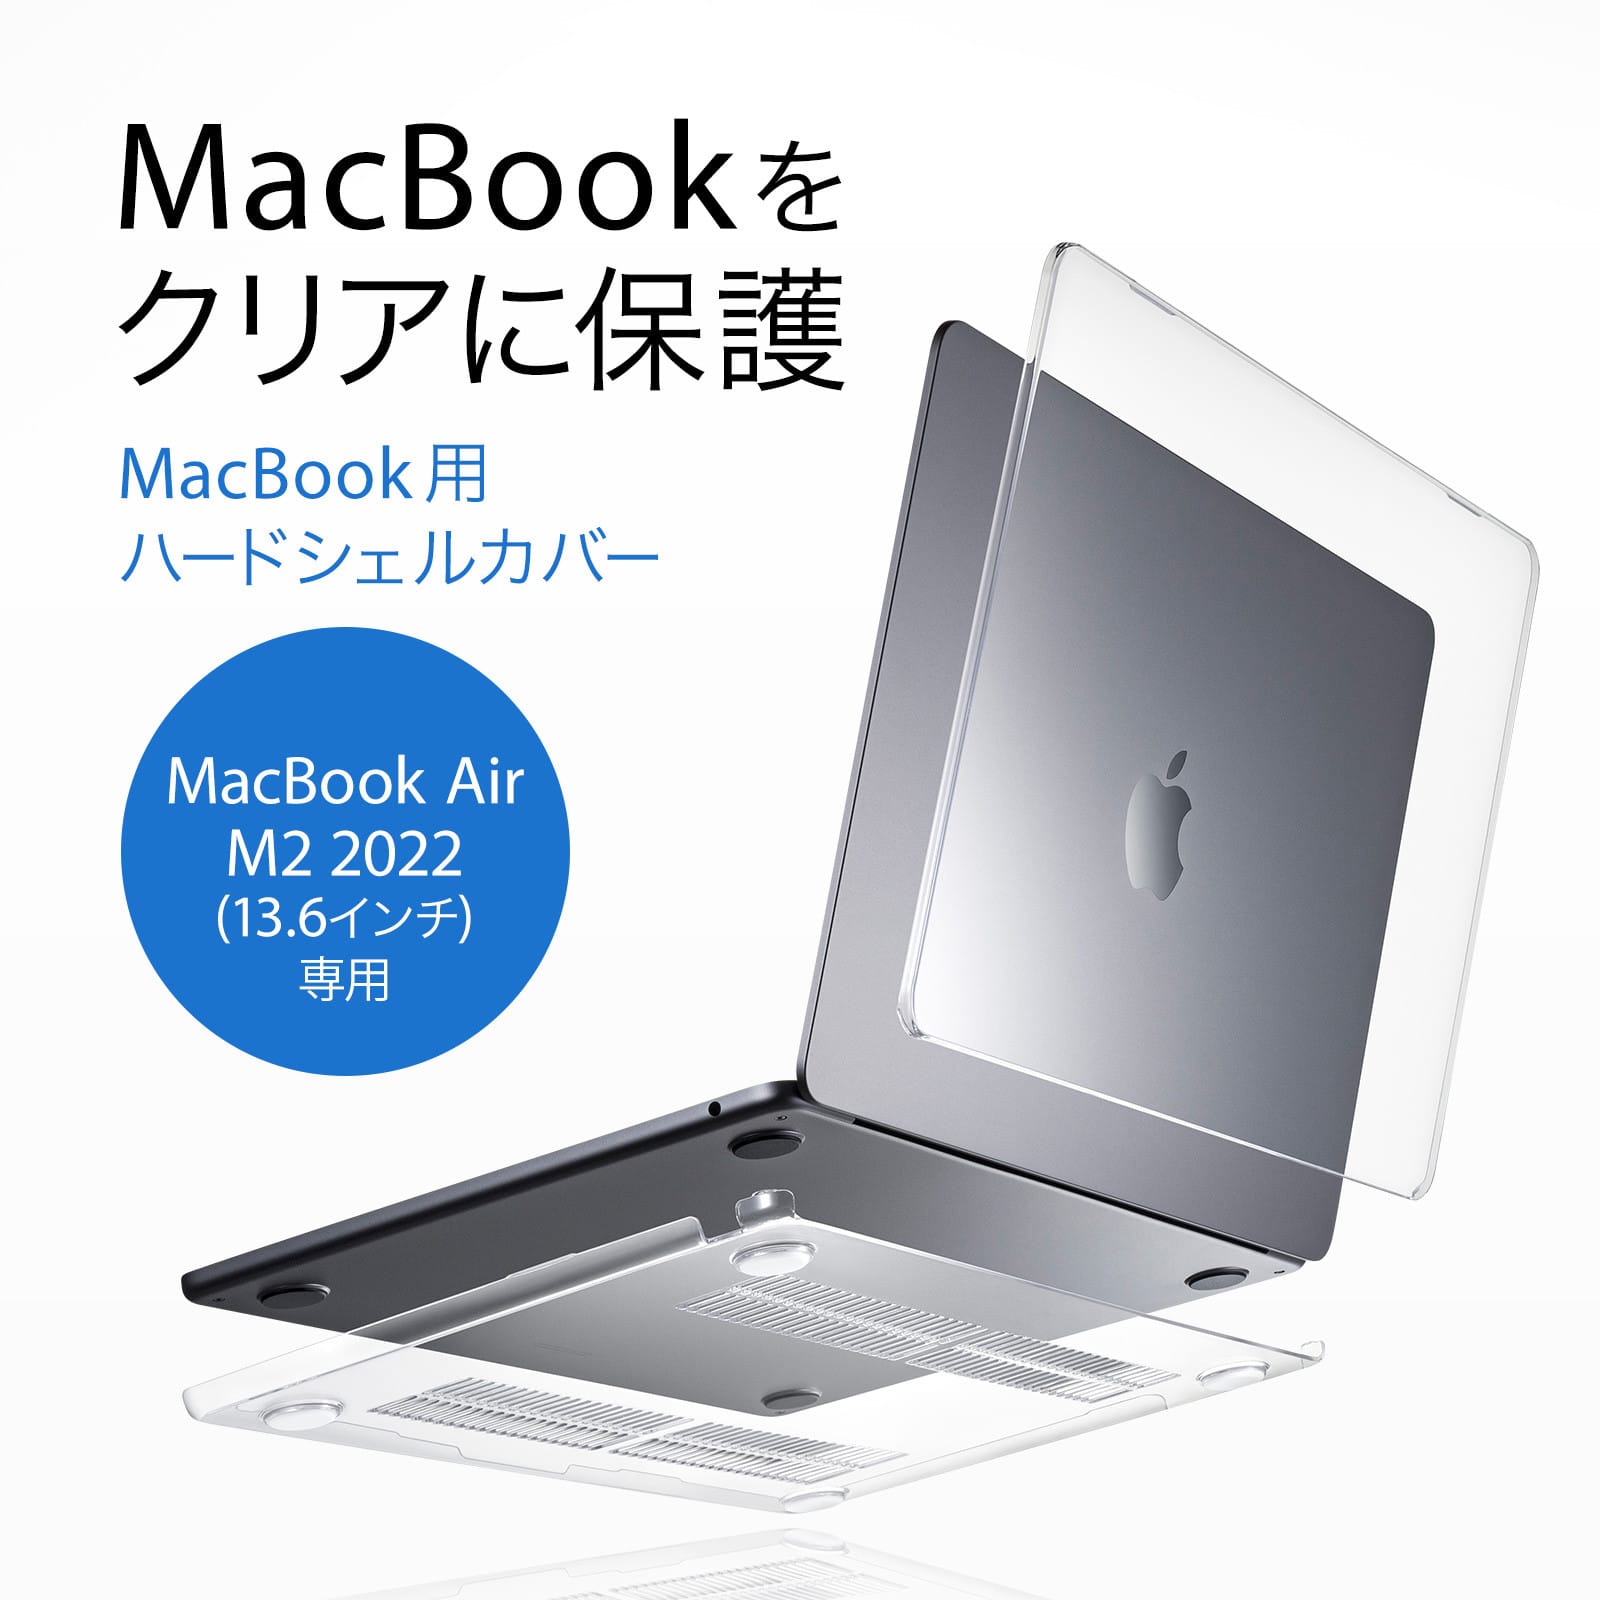 サンワサプライ、MacBook Air用ハードシェルカバーを発売